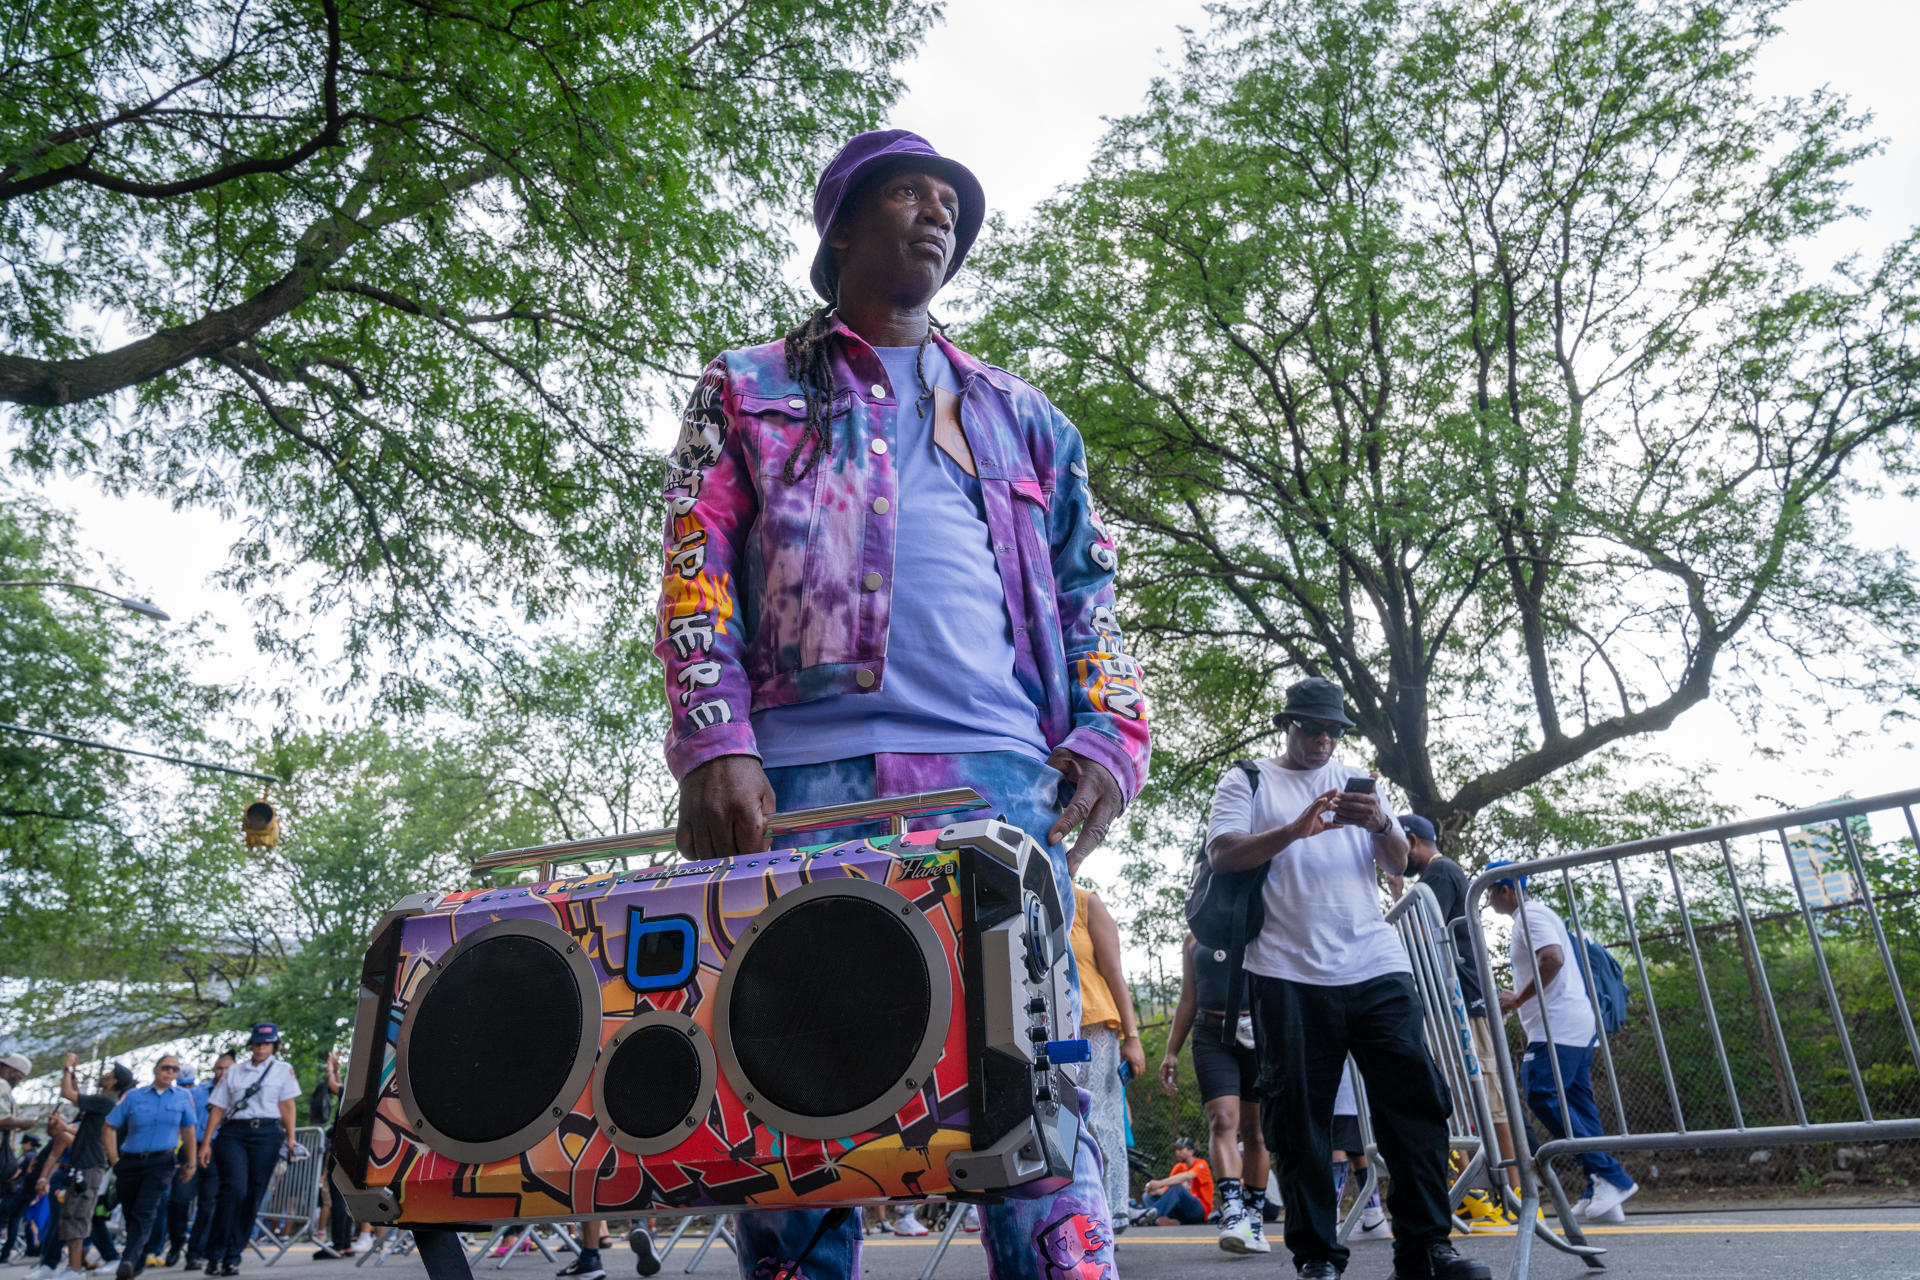 Orgullo de barrio en El Bronx de Nueva York por el 50 aniversario de la cultura hiphop